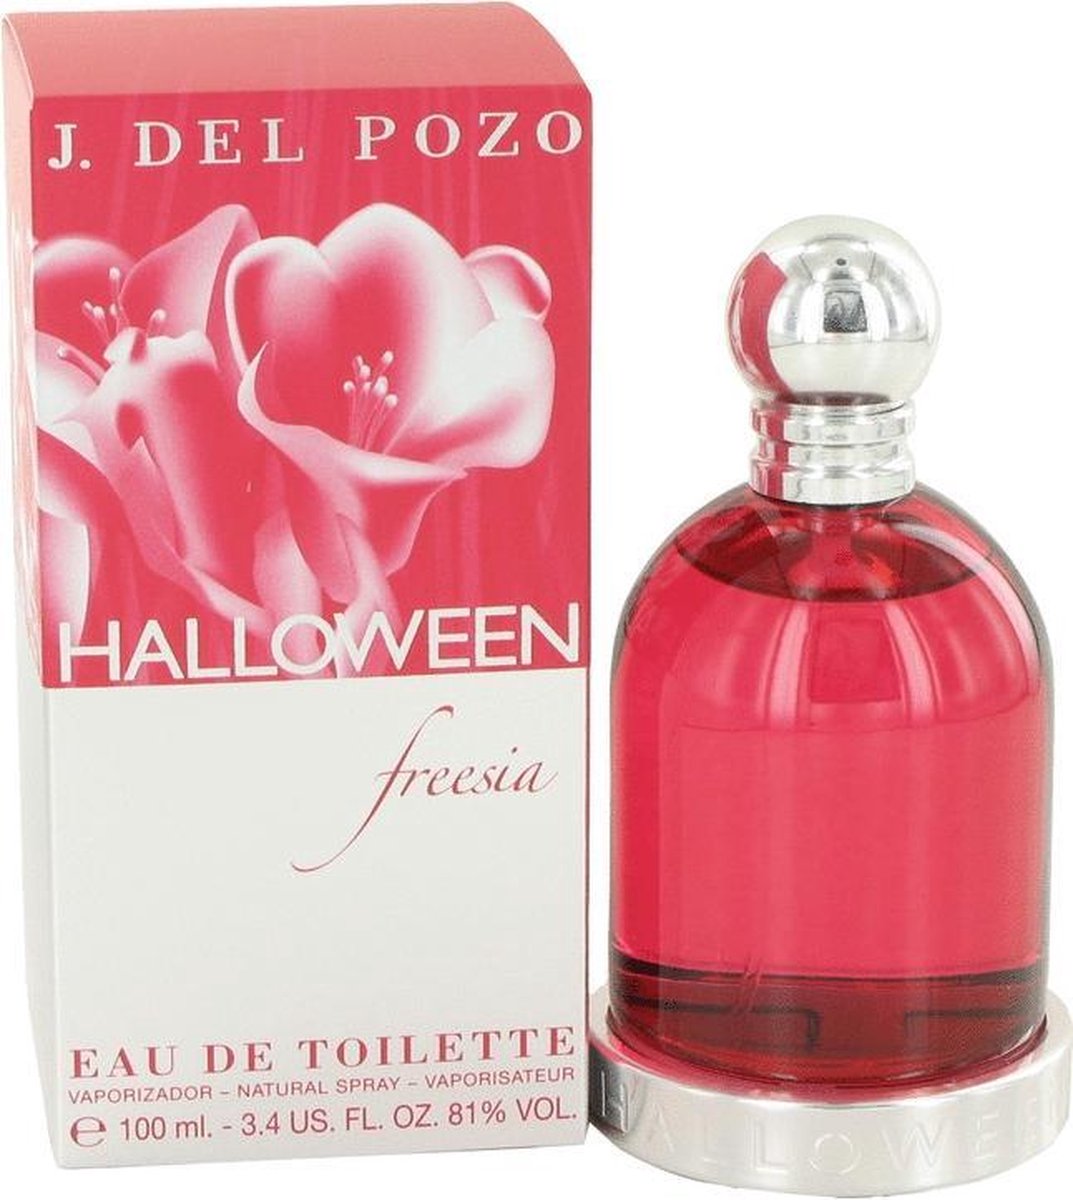 Jesus Del Pozo Halloween Freesia Eau De Toilette Spray 100 ml for Women